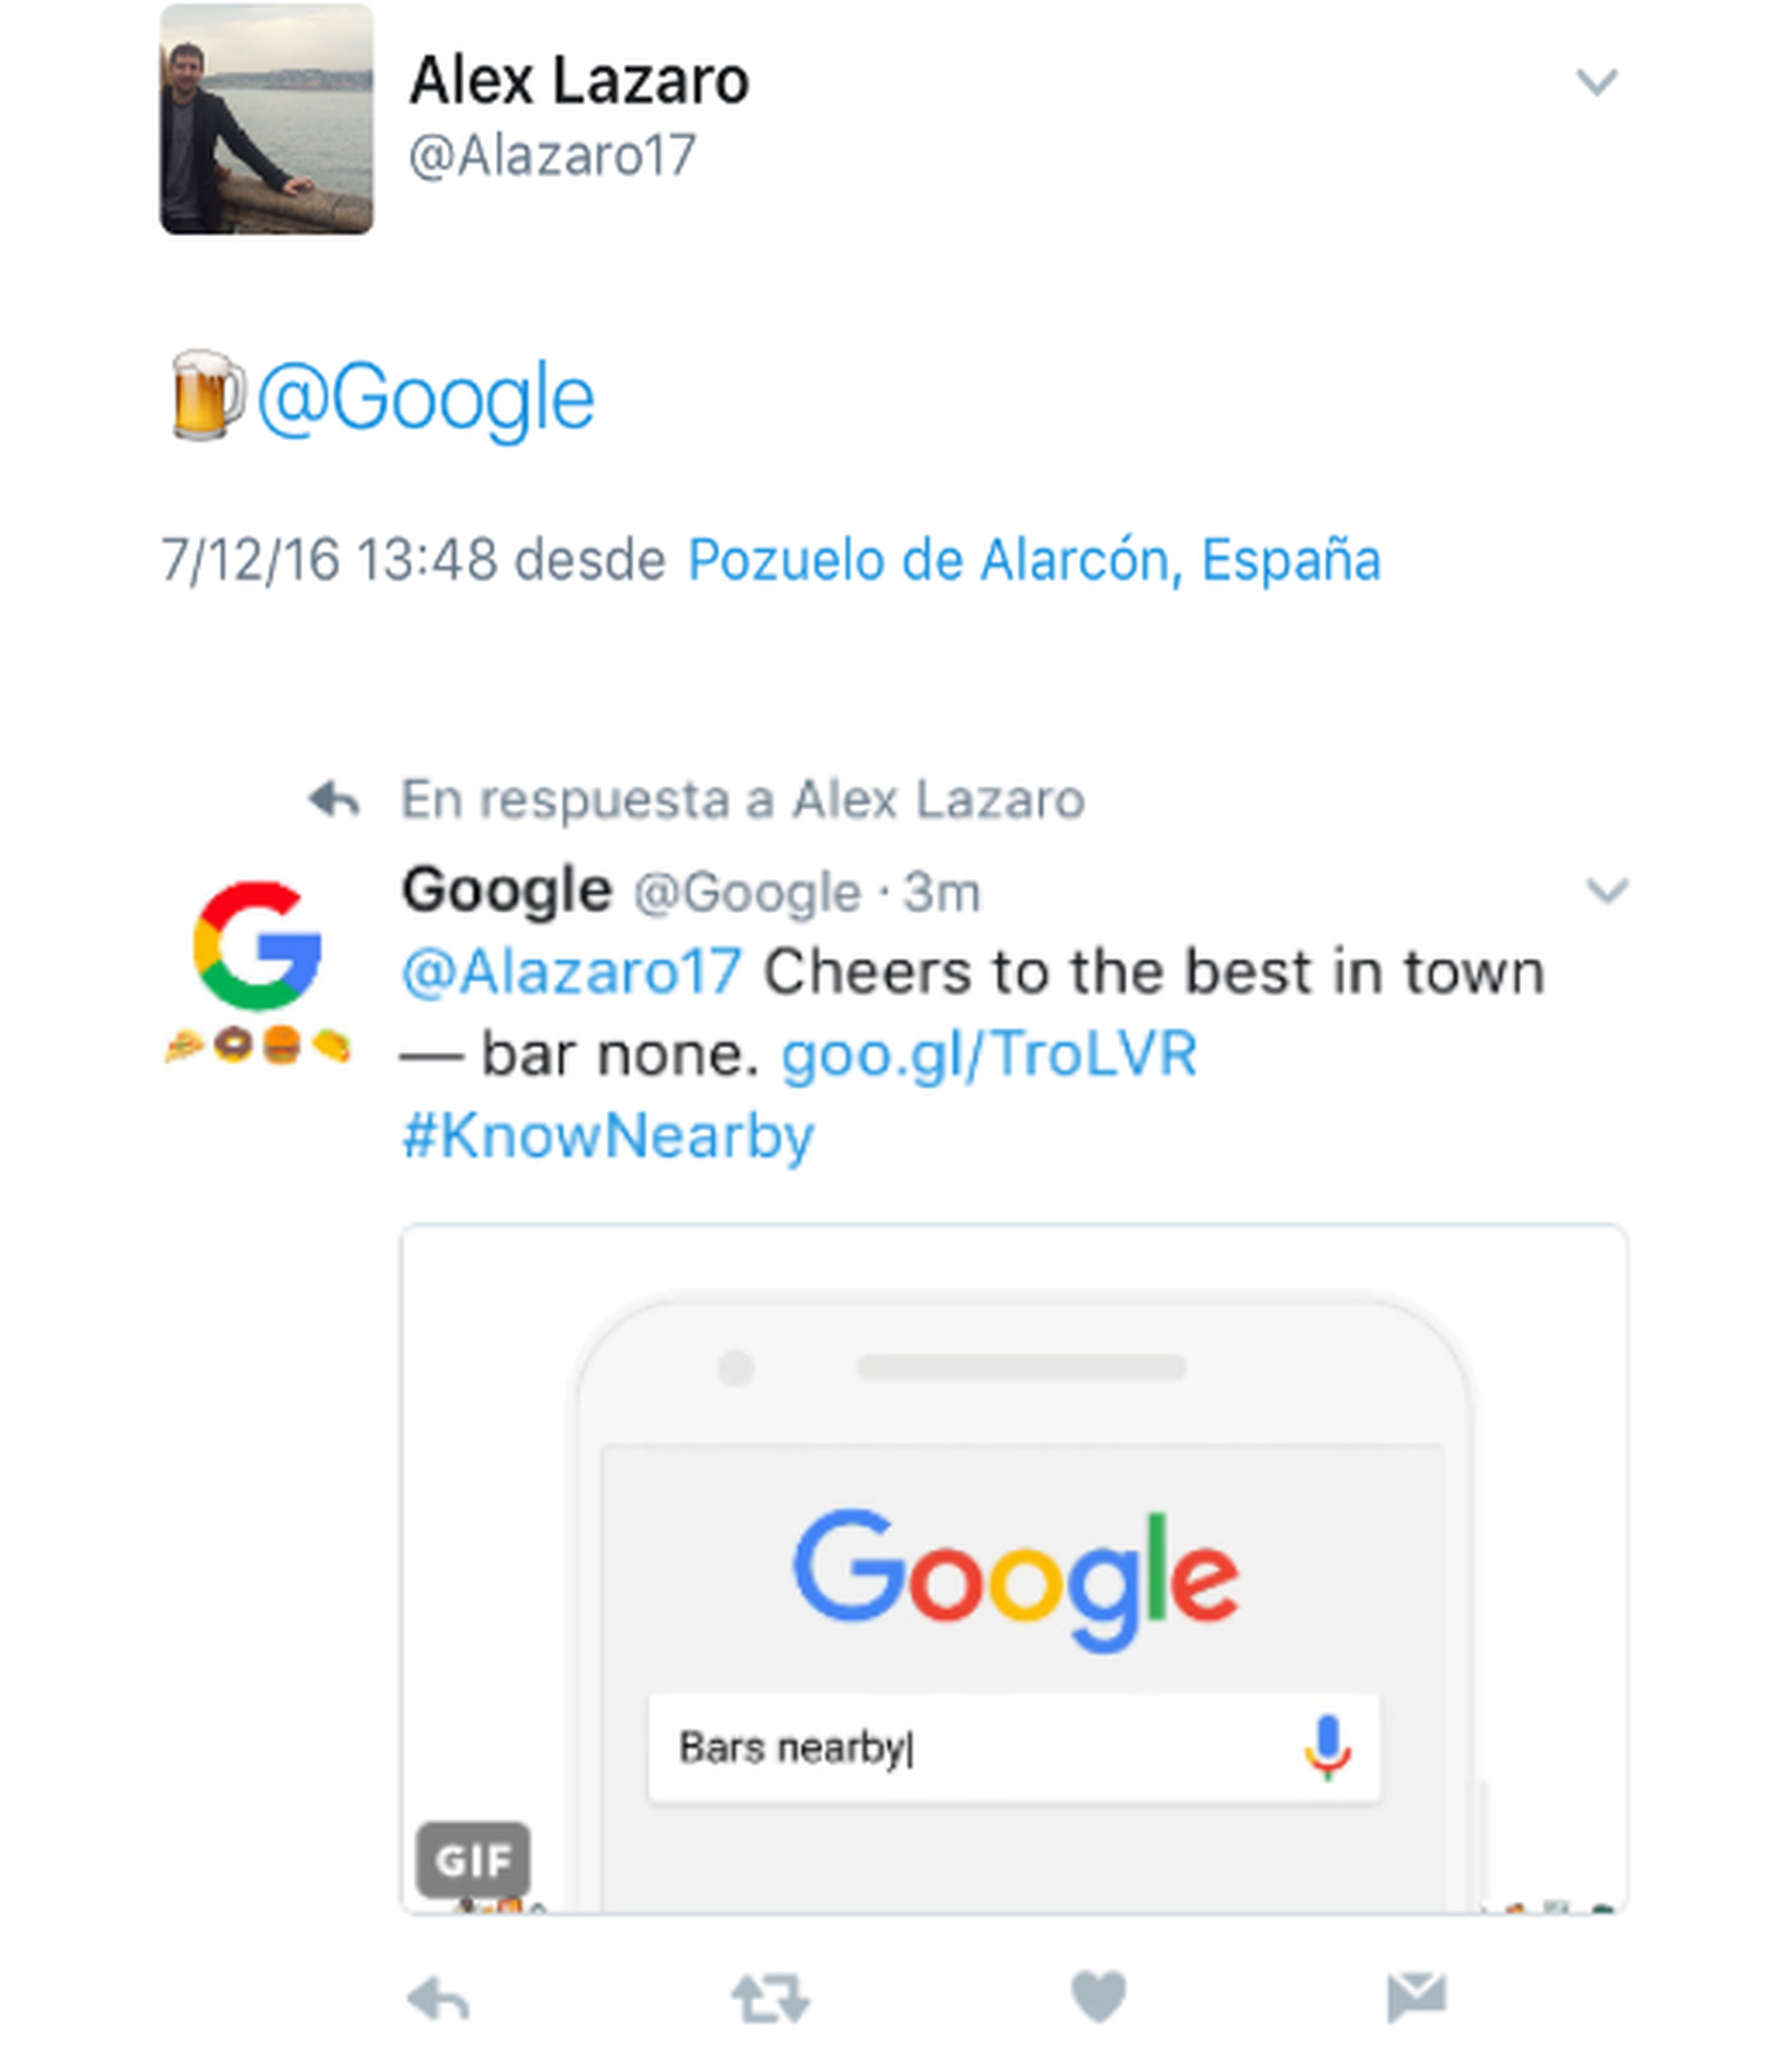 Buscar en Google a través de Twitter ya es posible con un emoji